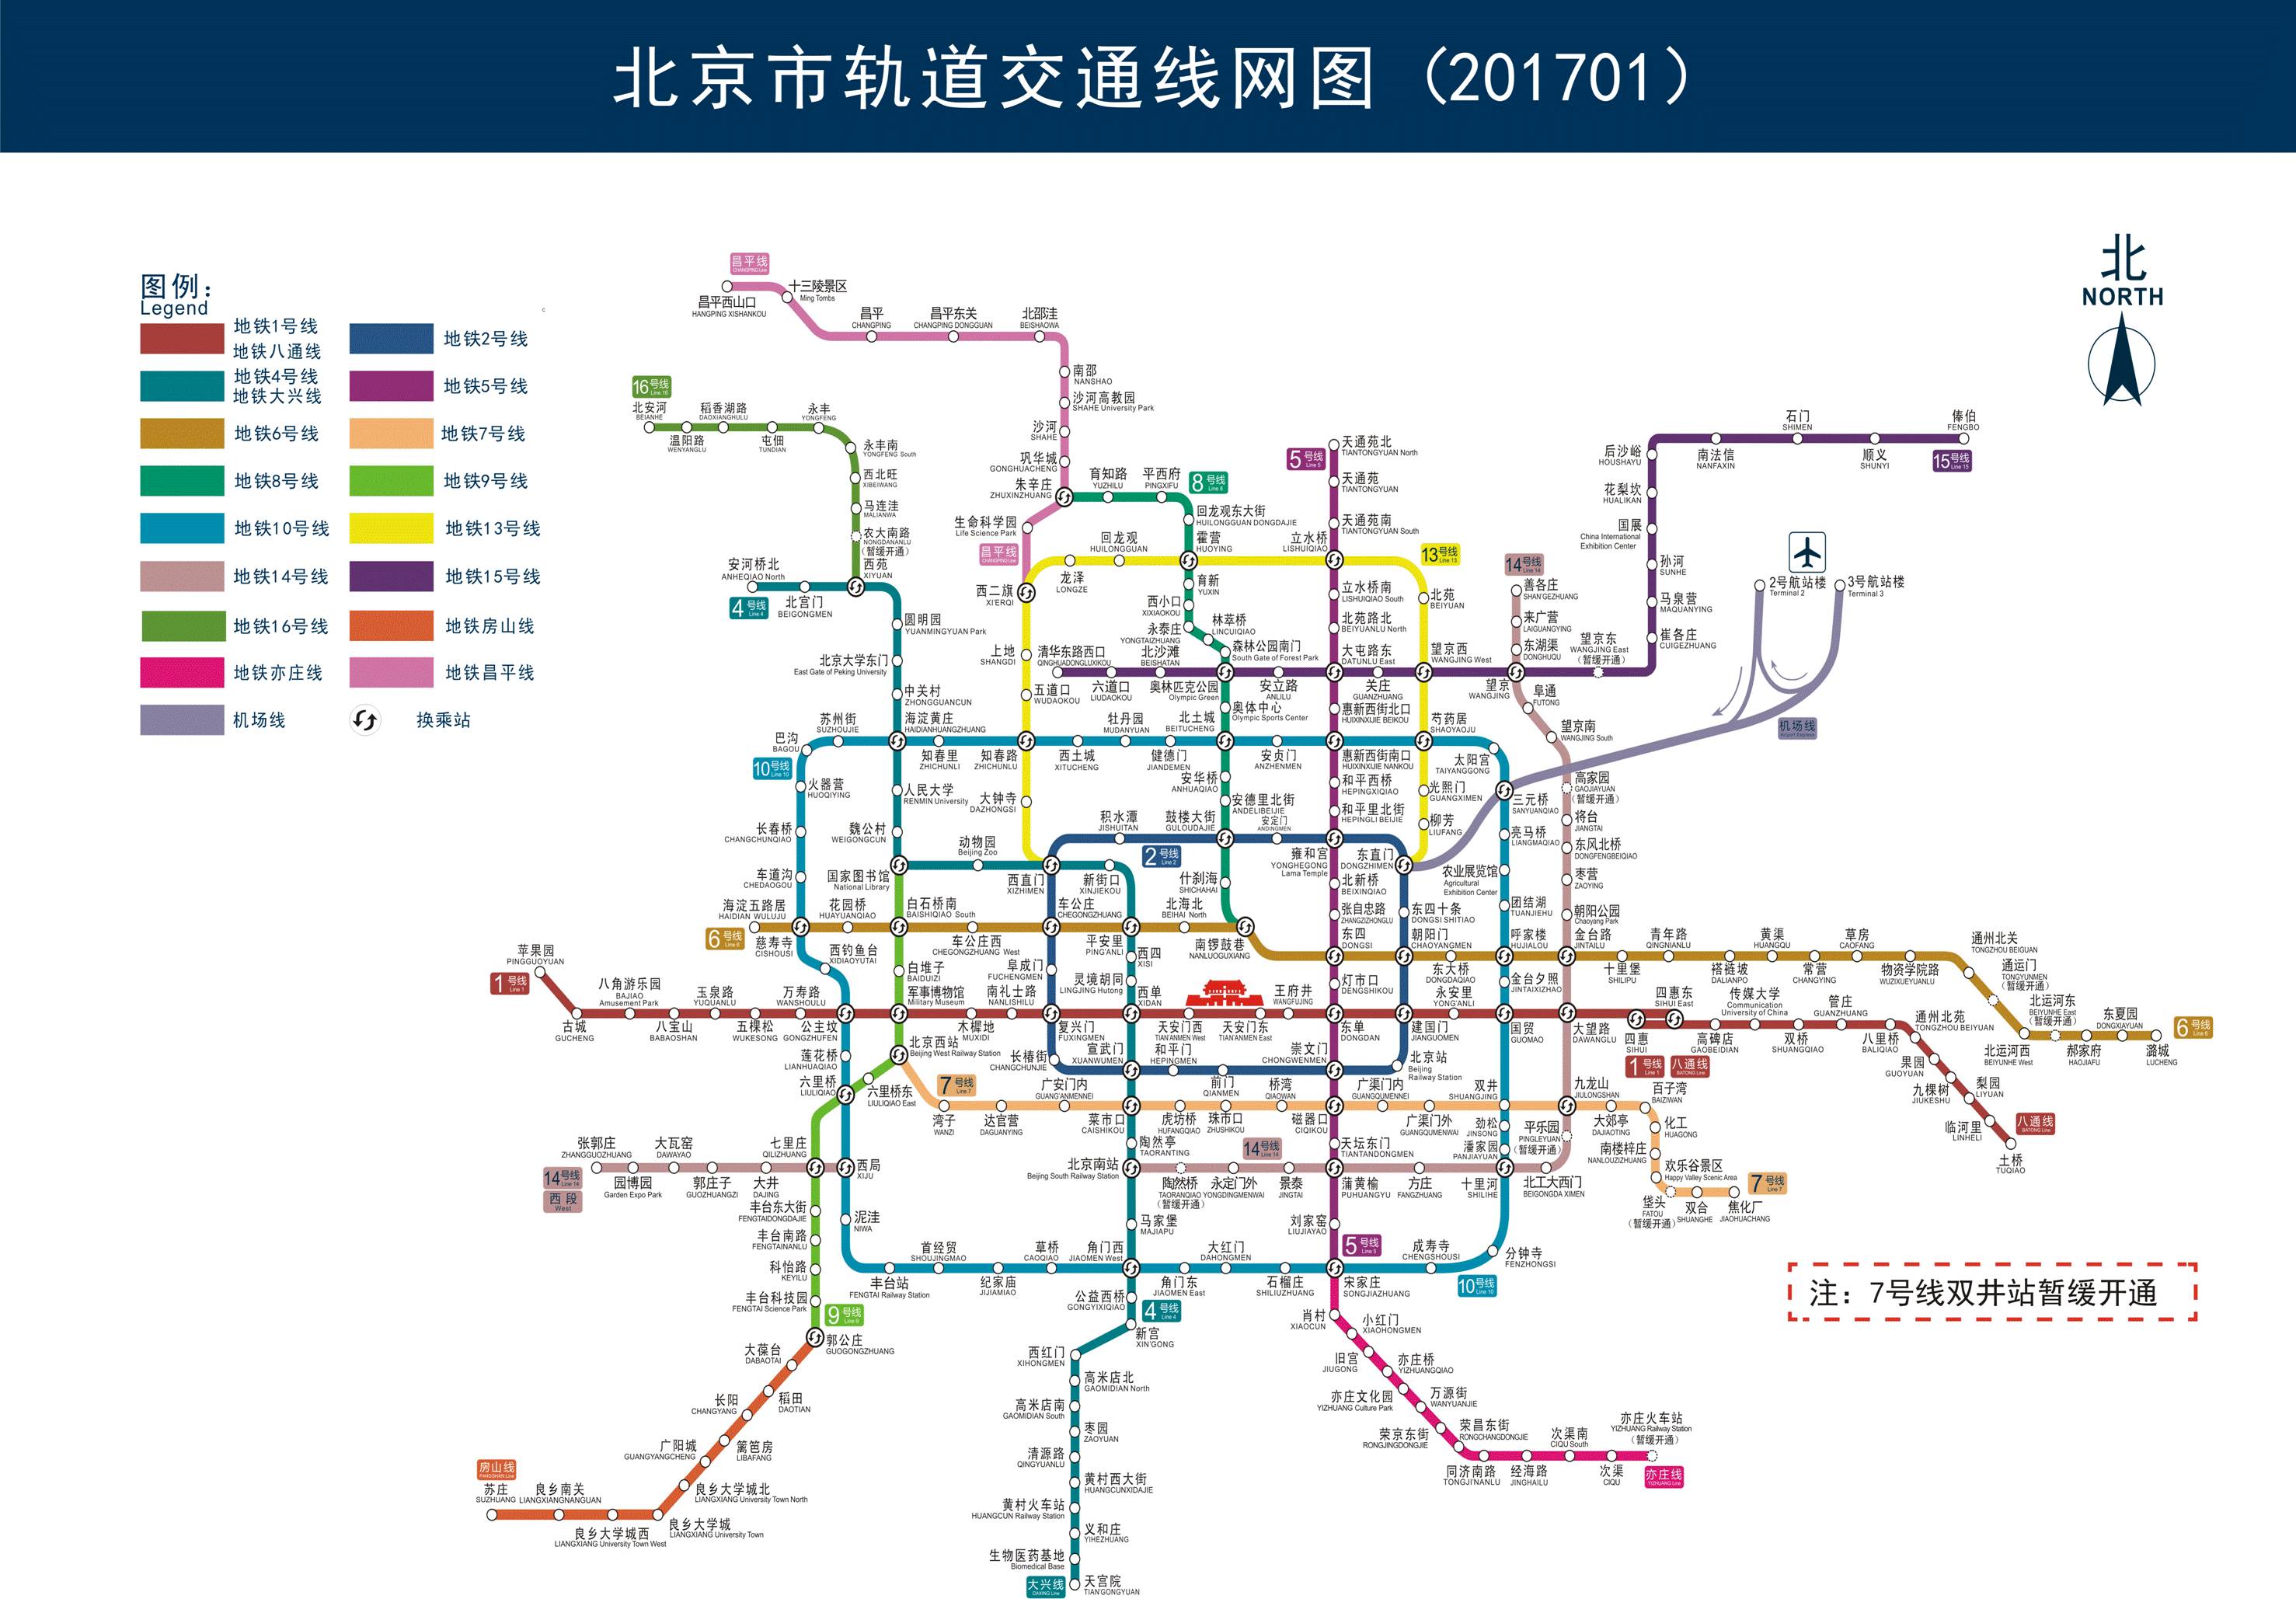 北京地铁线路图_运营时间票价站点_查询下载|地铁图